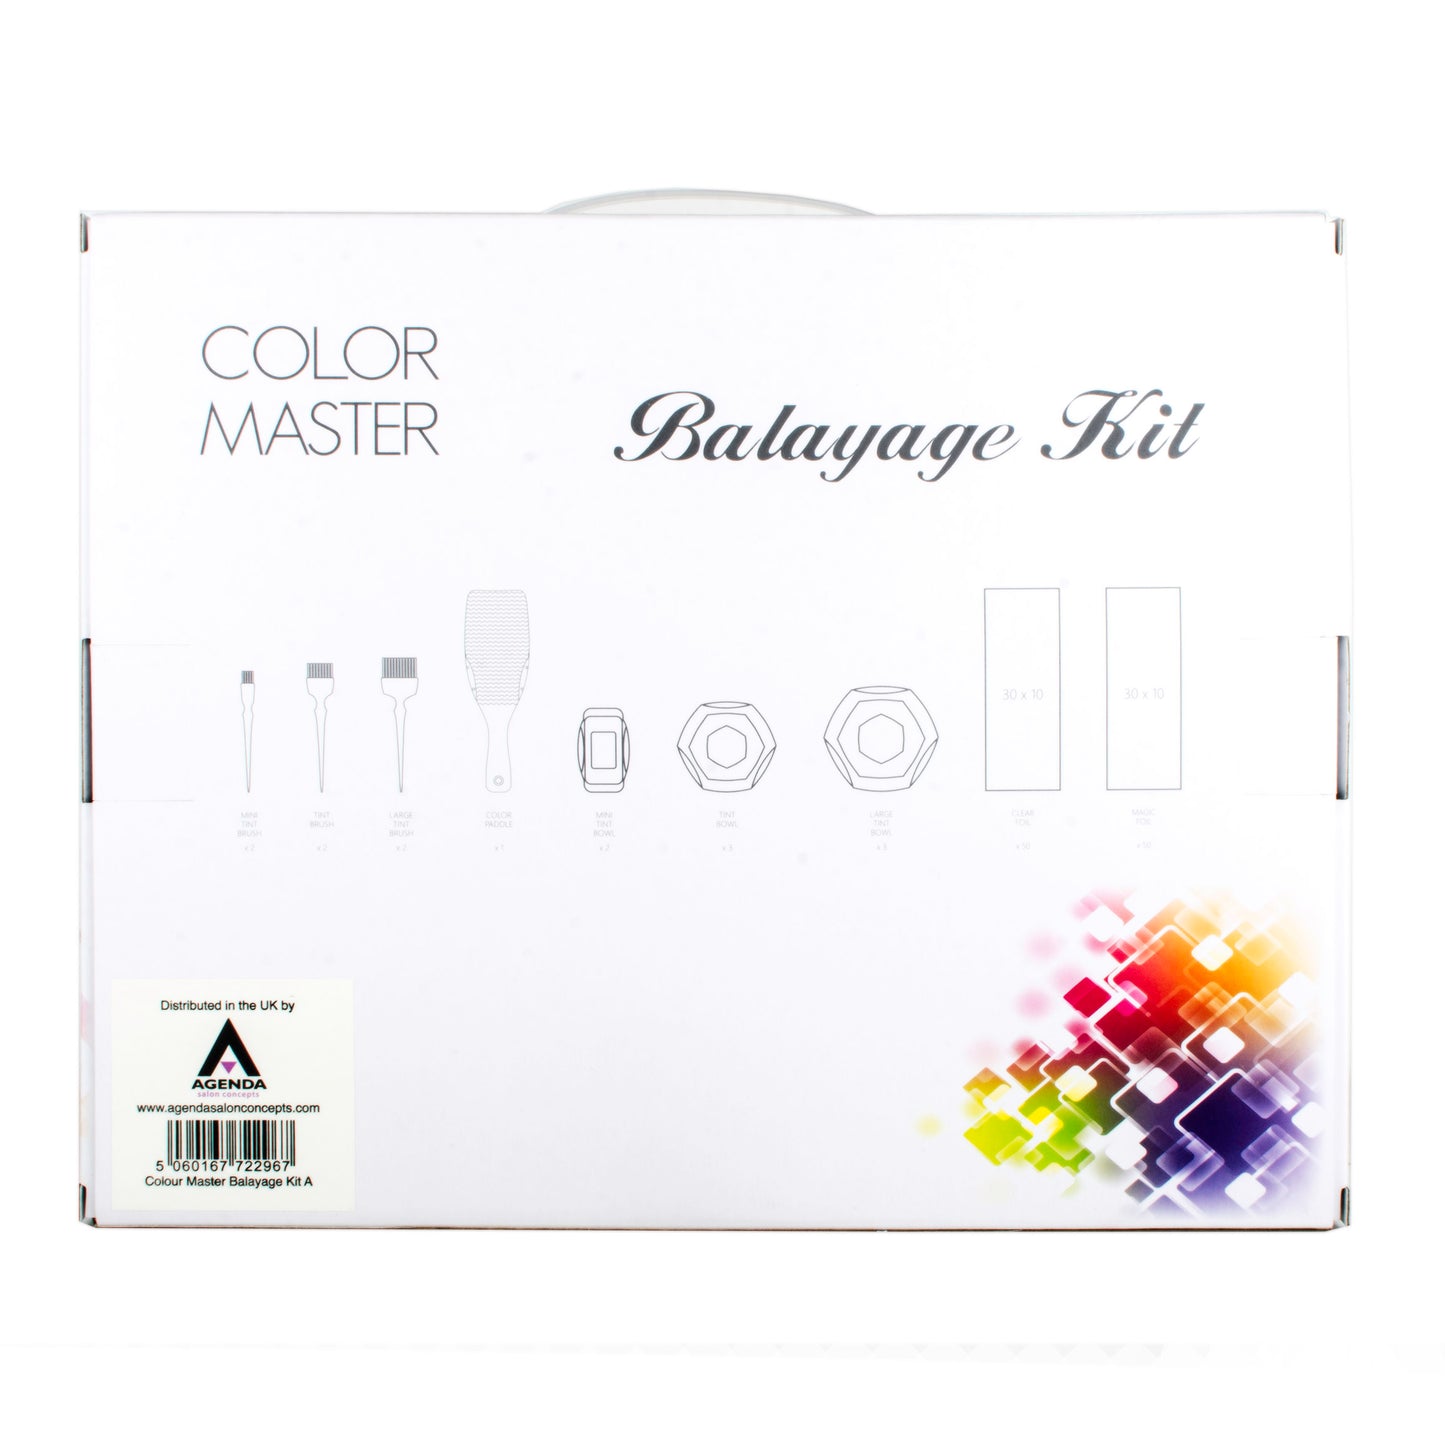 Color Master Balayage Tool Kit